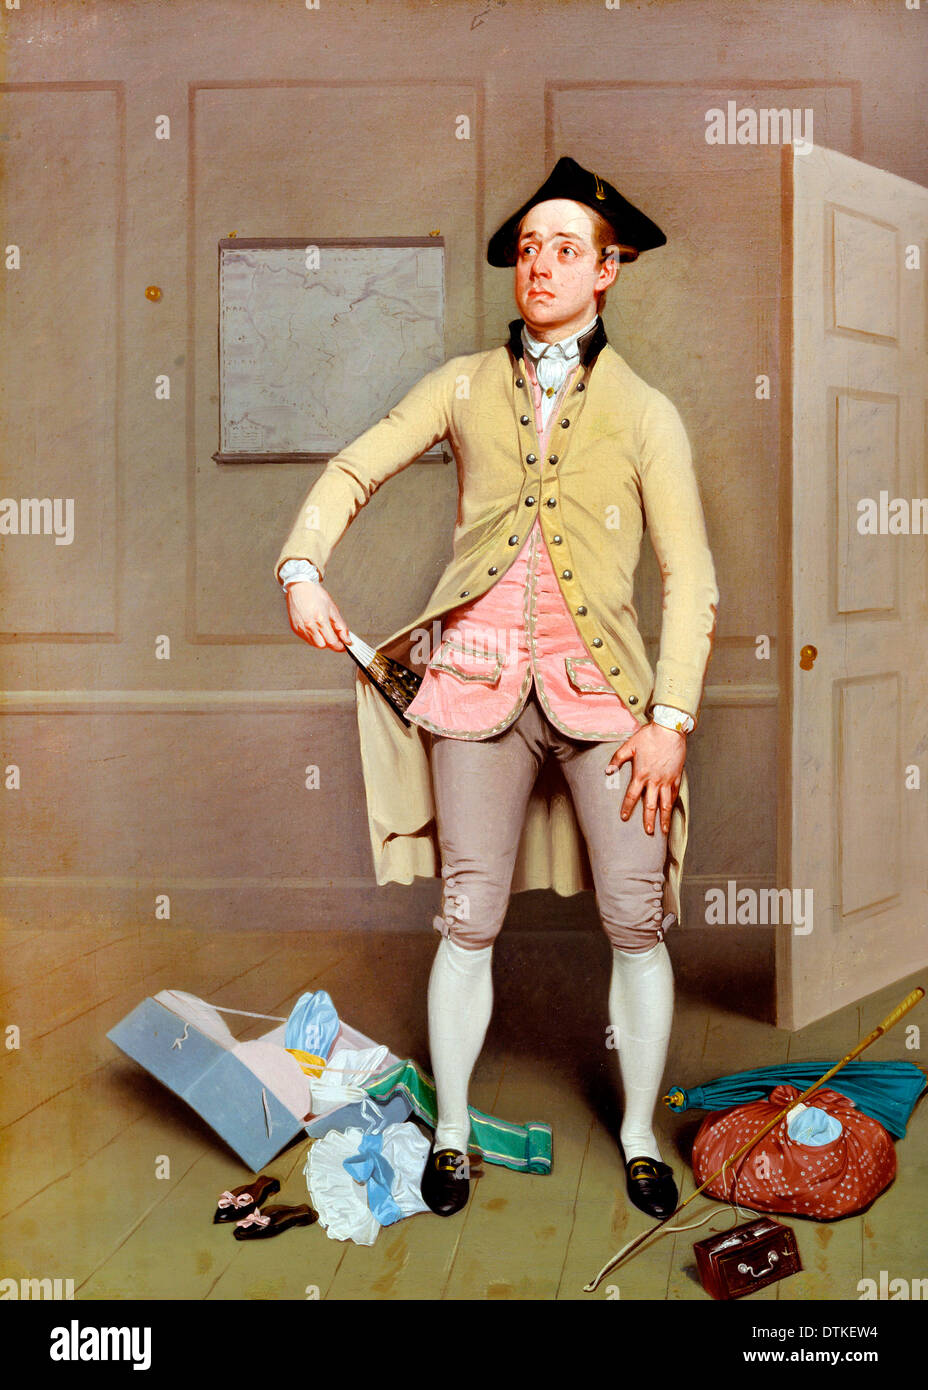 Samuel de Wilde, Samuel Thomas Russell in Samuel Footes "Bürgermeister von Garratt" 1810-1811 Öl auf Leinwand. Stockfoto